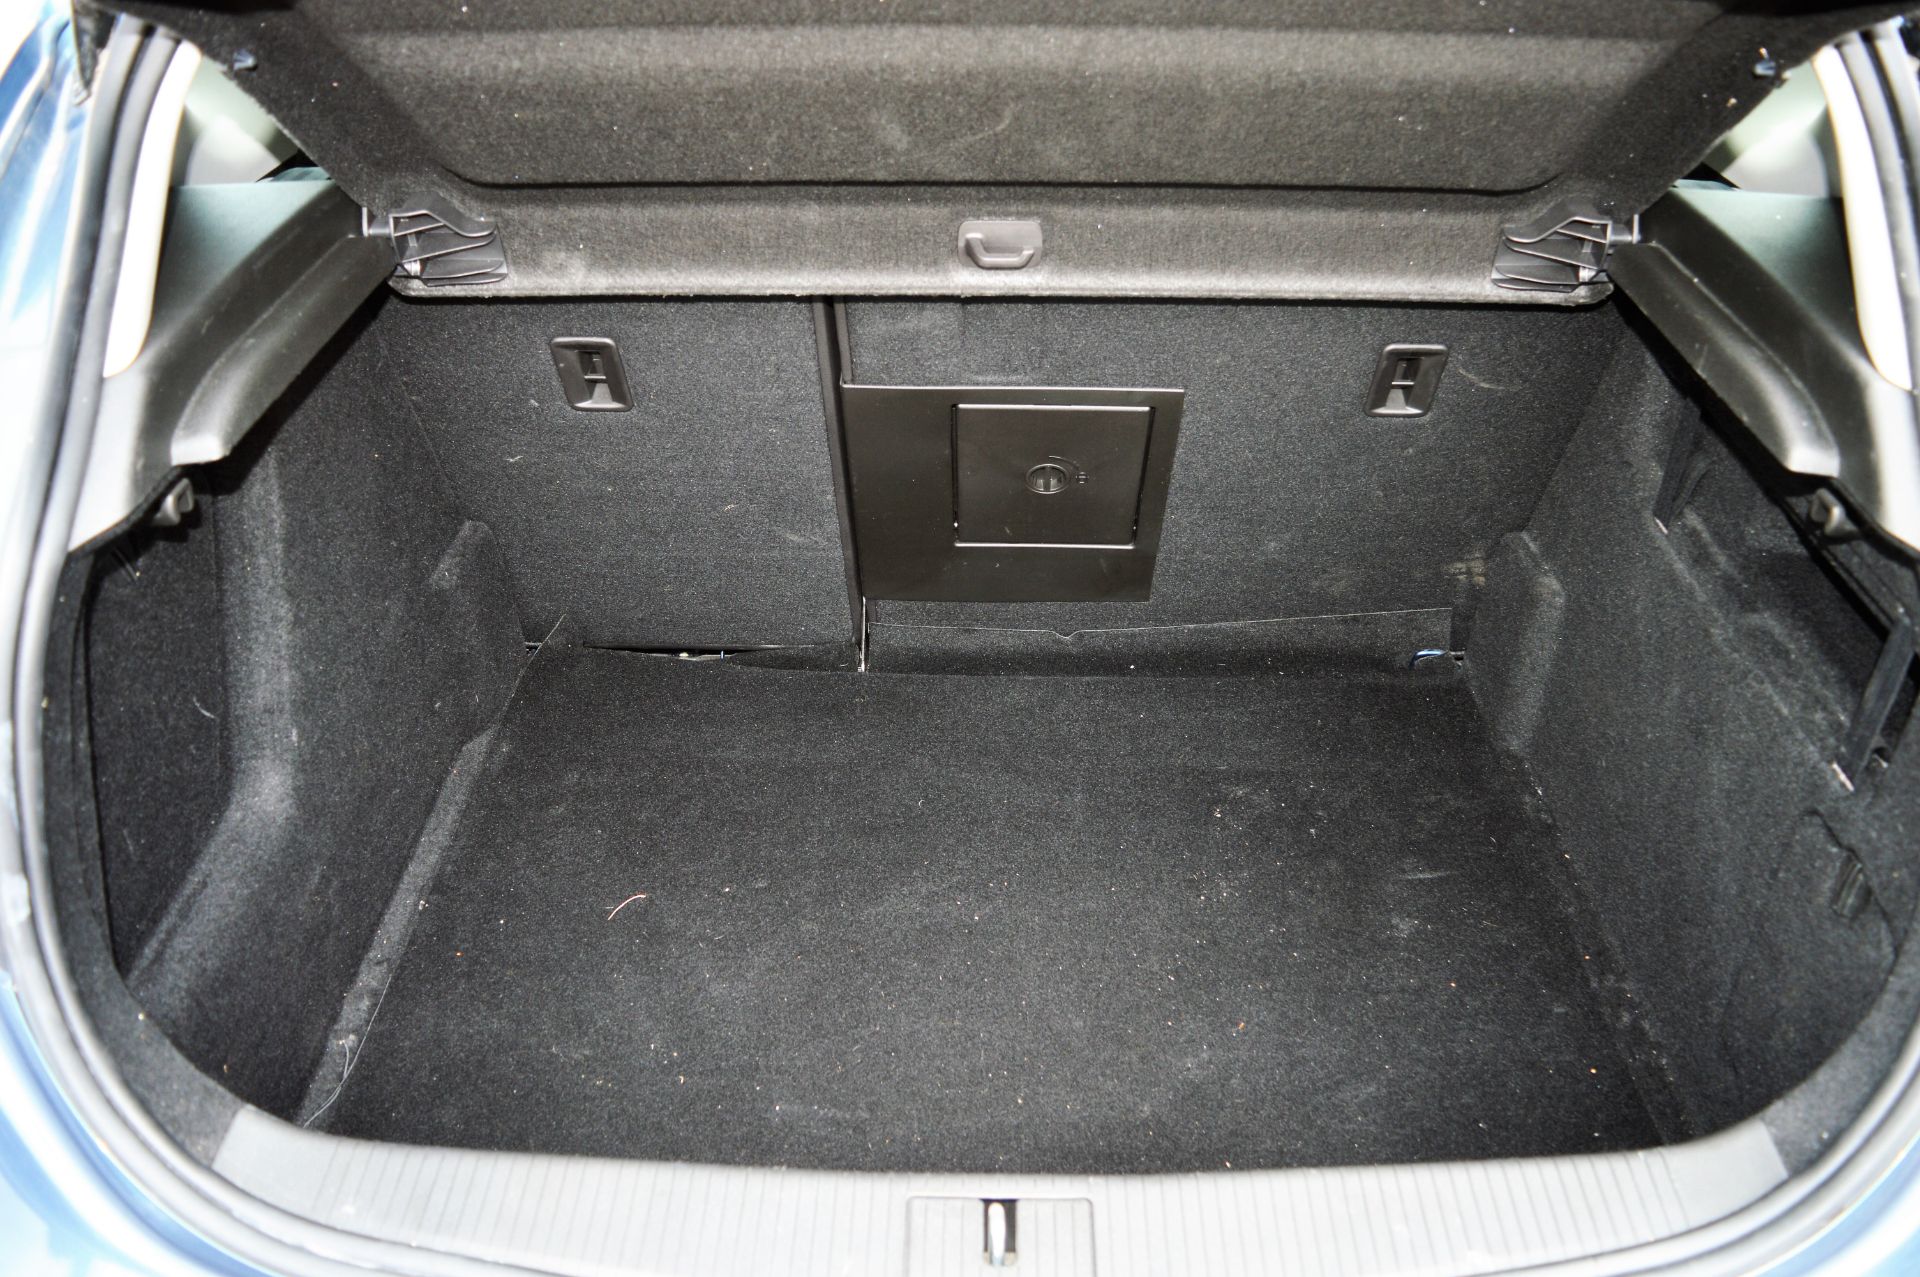 Vauxhall Astra 1.6i VVT 16v Elite 5 door hatchback car Date of